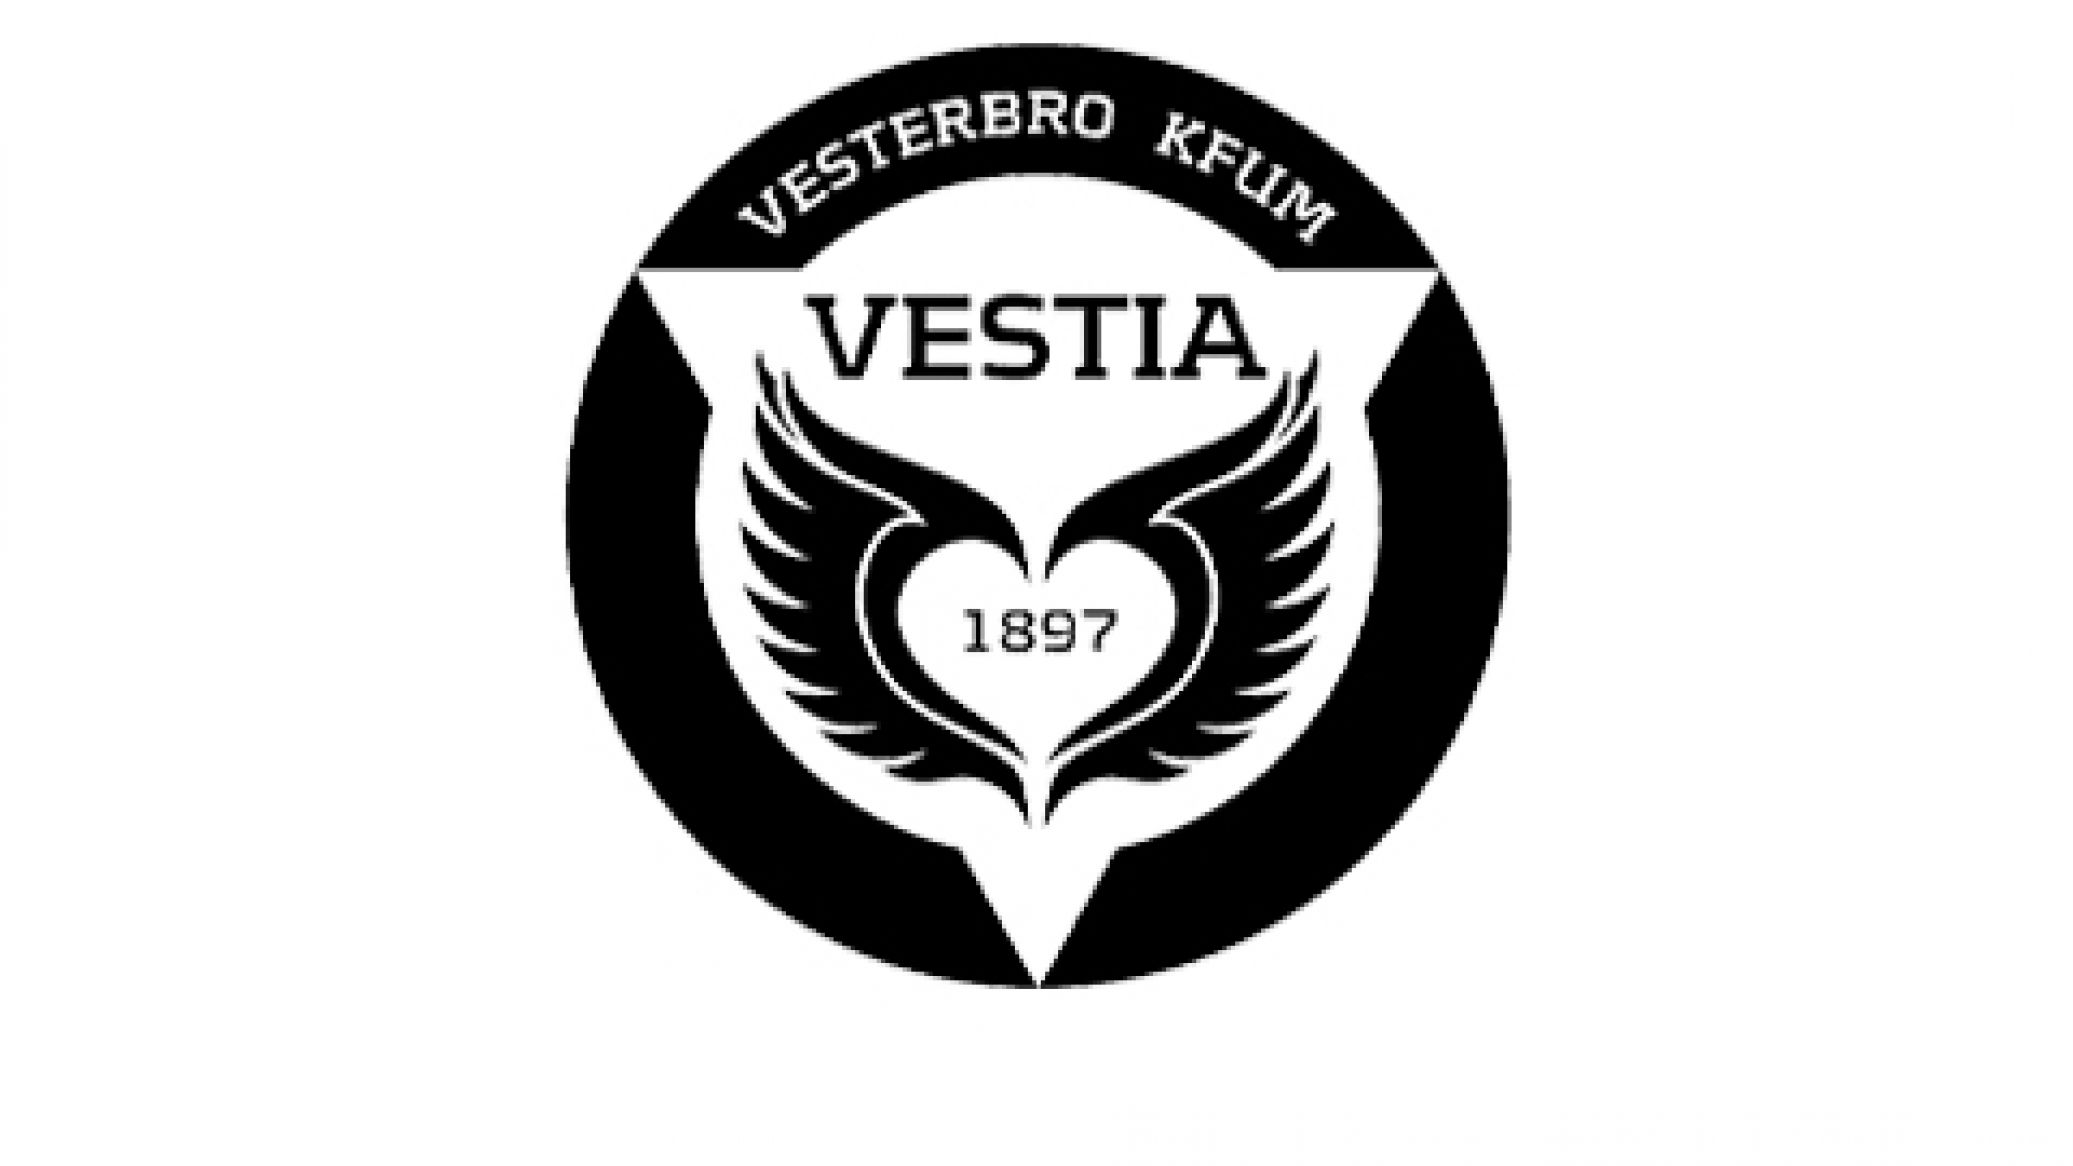 Boldklubben Vestia